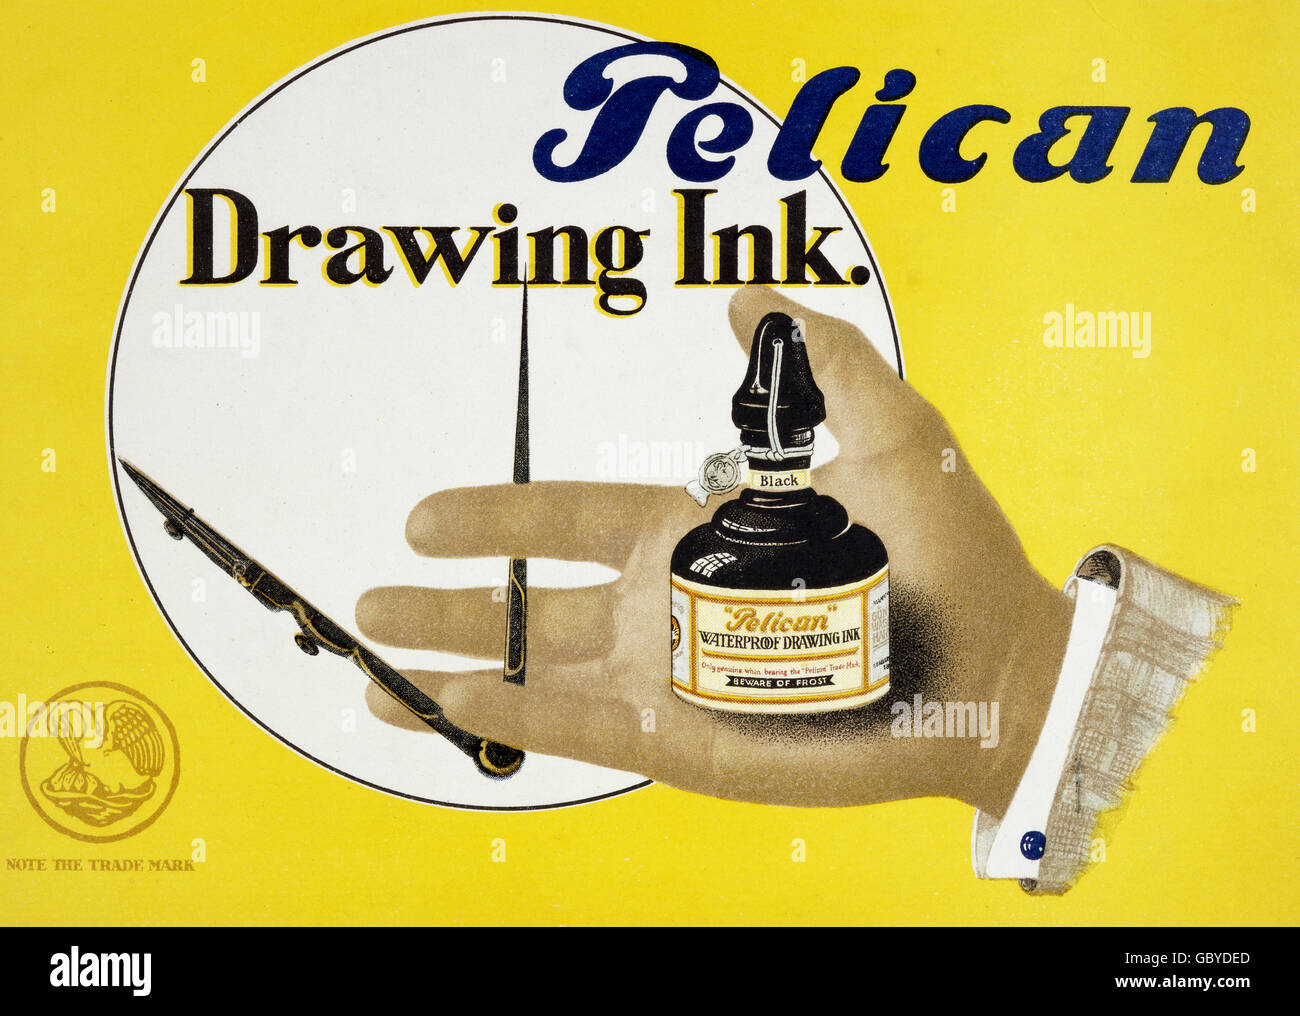 Drawing ink immagini e fotografie stock ad alta risoluzione - Alamy